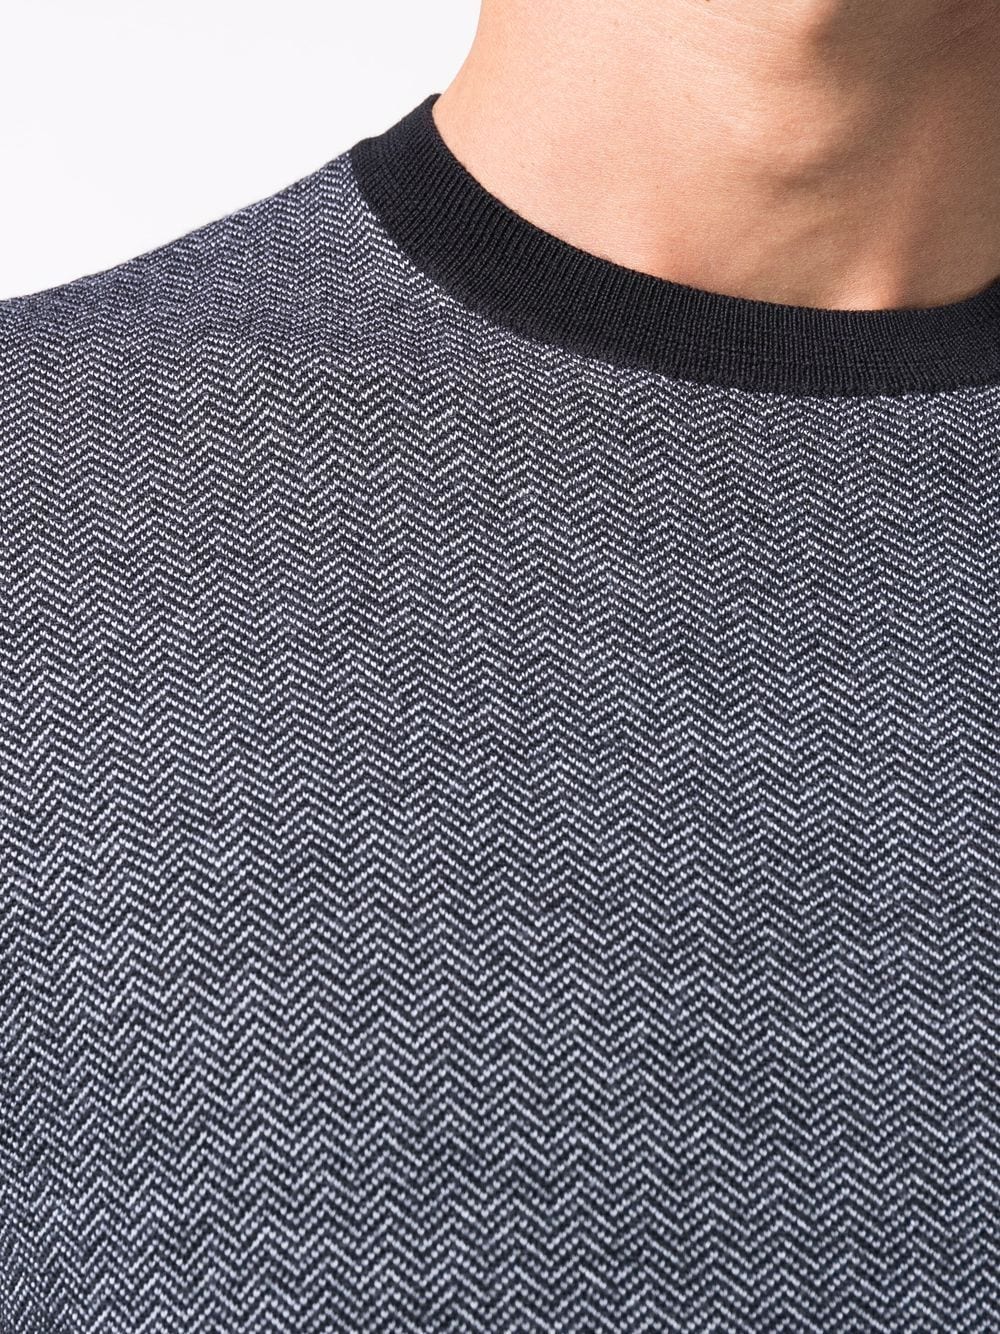 фото Emporio armani шерстяной свитер с круглым вырезом